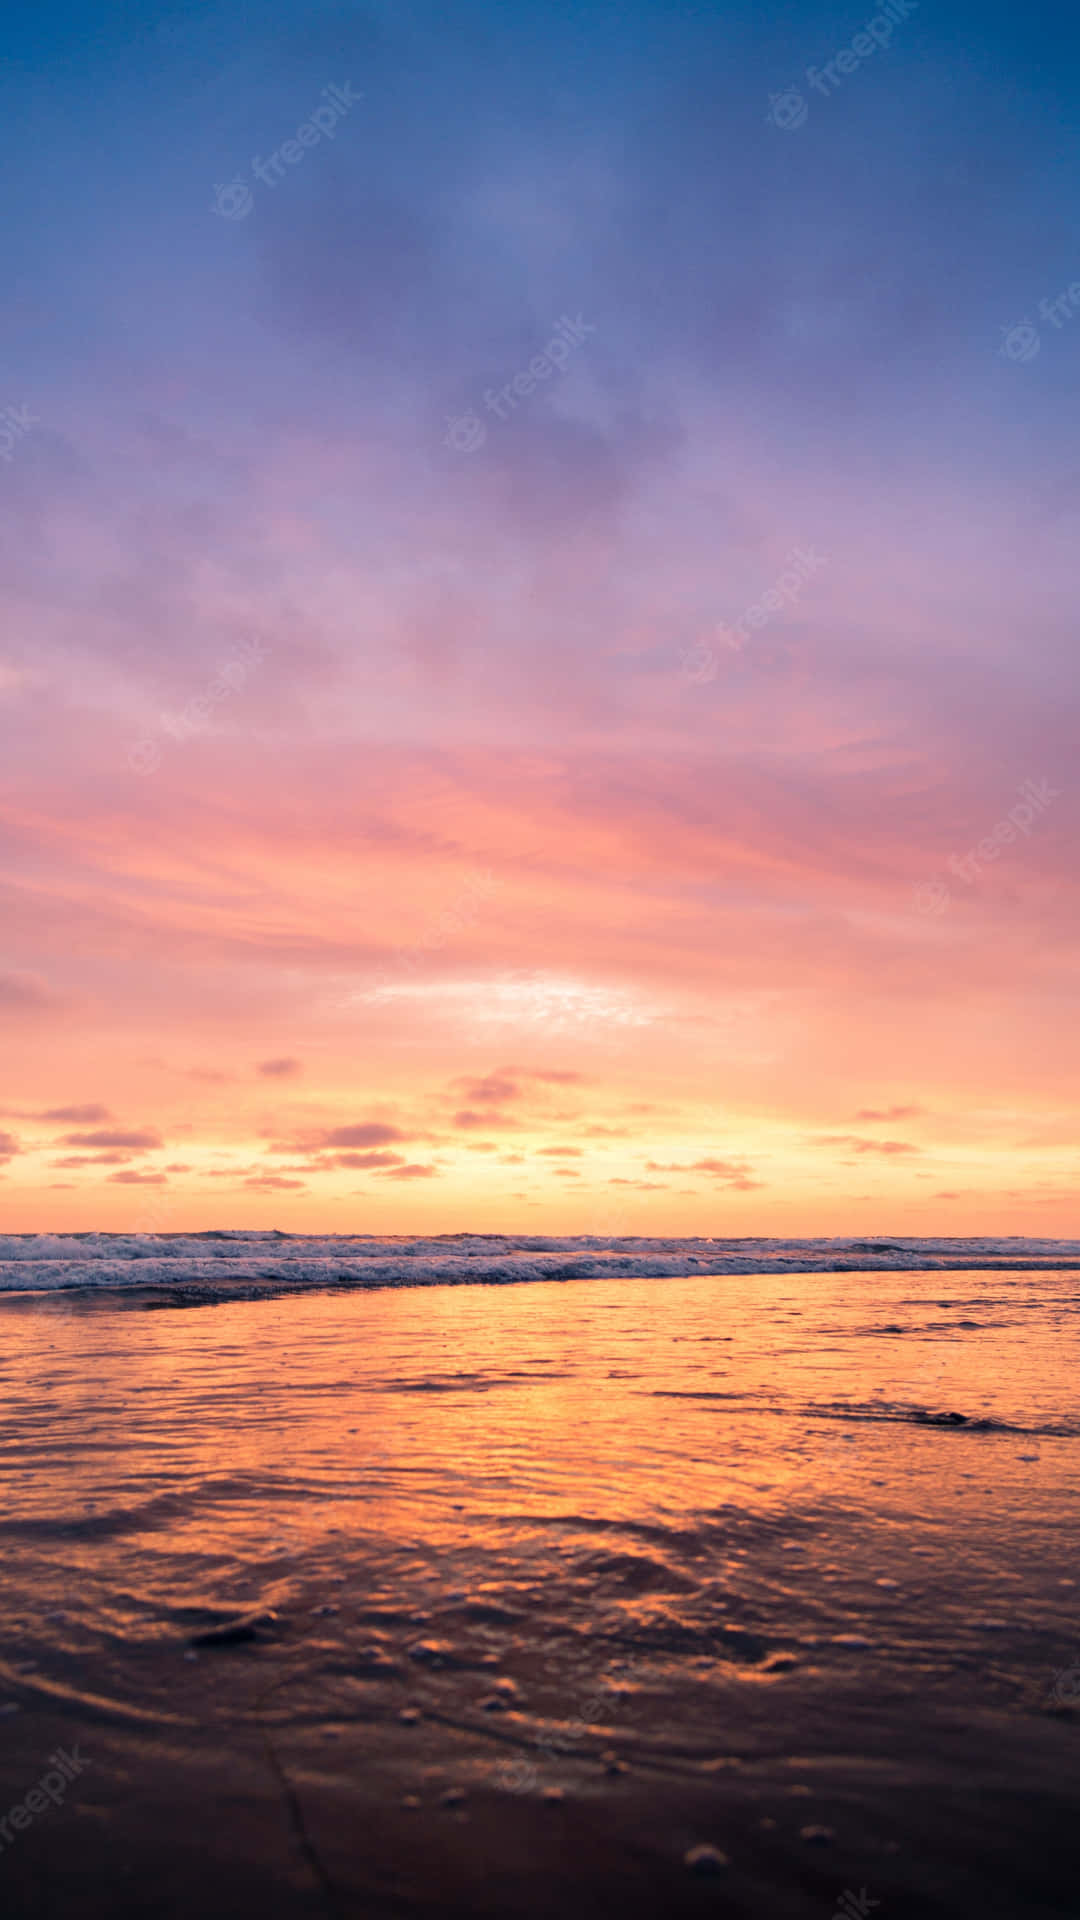 Unapuesta De Sol En La Playa Con Un Cielo Colorido Fondo de pantalla